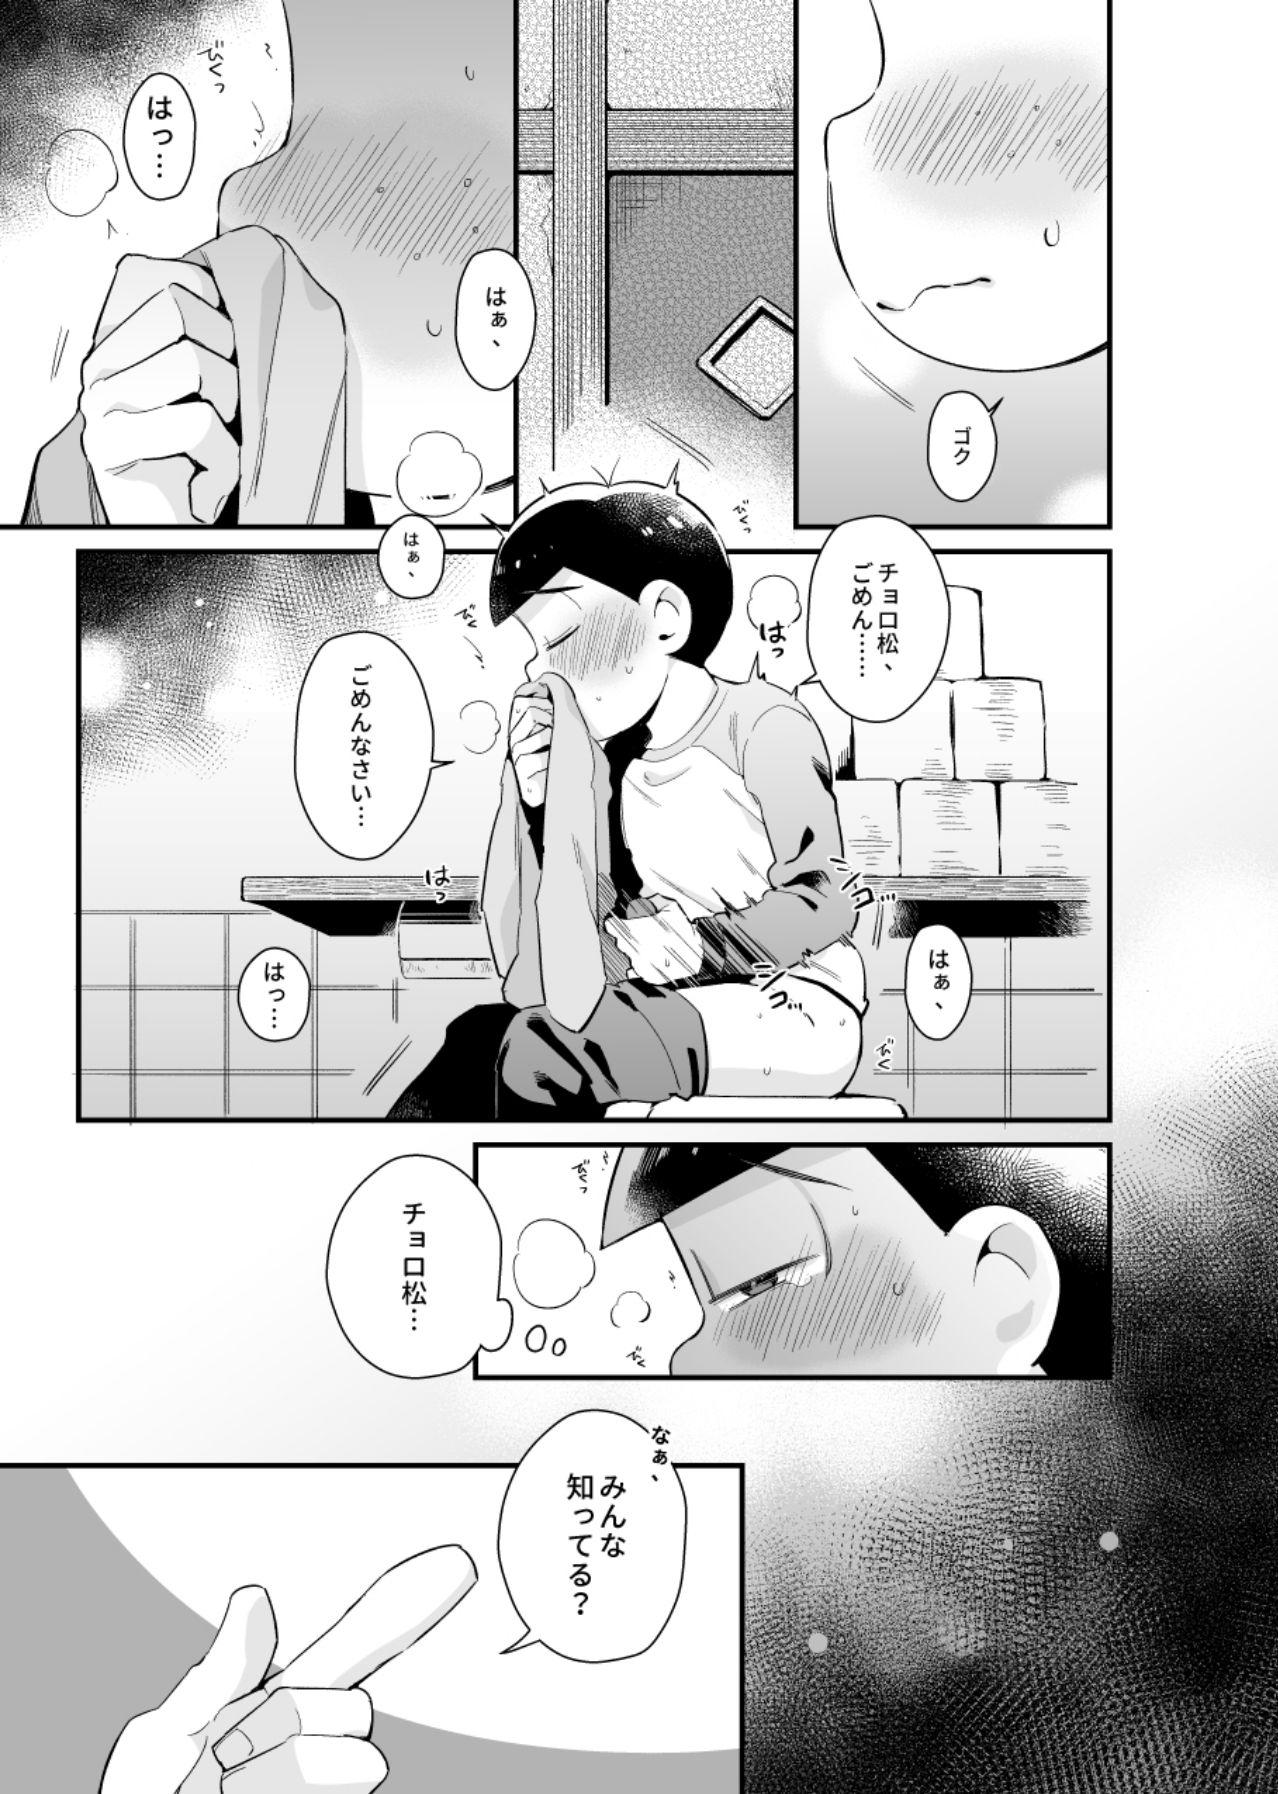 Buttfucking Bokutachi no shishunki - Osomatsu-san Gay Shaved - Page 8